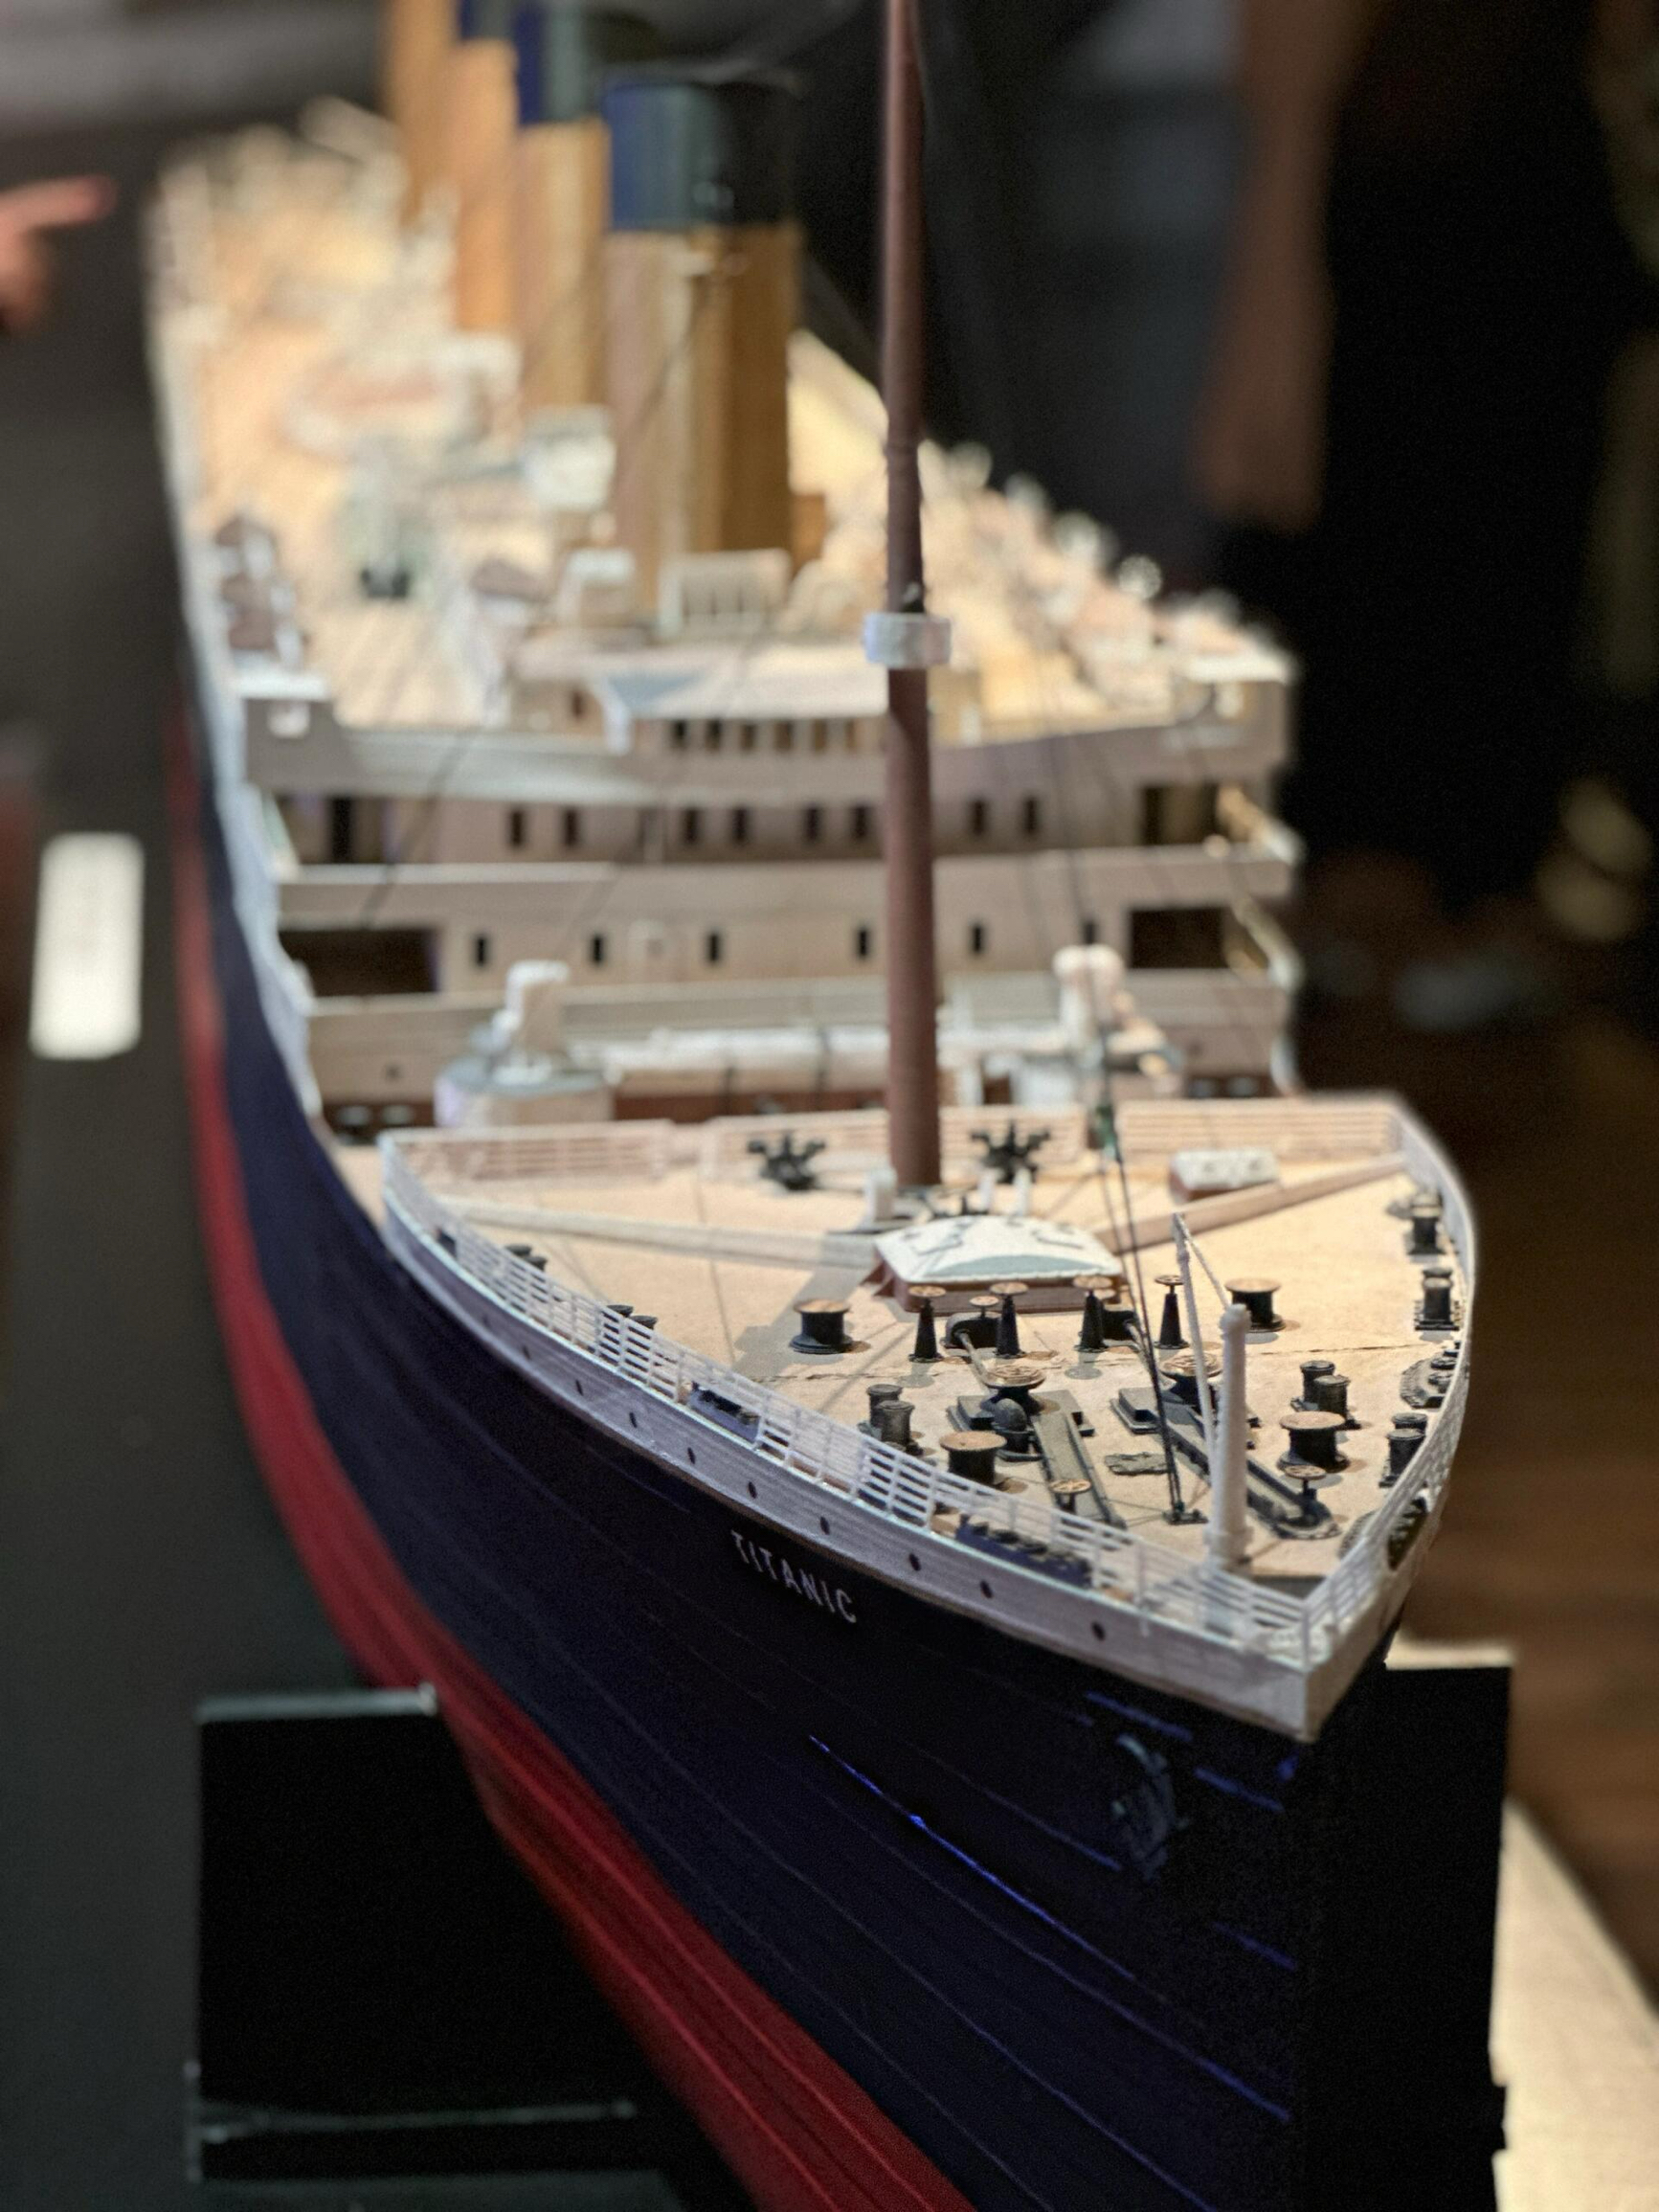 泰坦尼克号文物展于2012年重新设计后对外开放，导游会带游客游览并讲解当年船上的故事，这里复原了泰坦